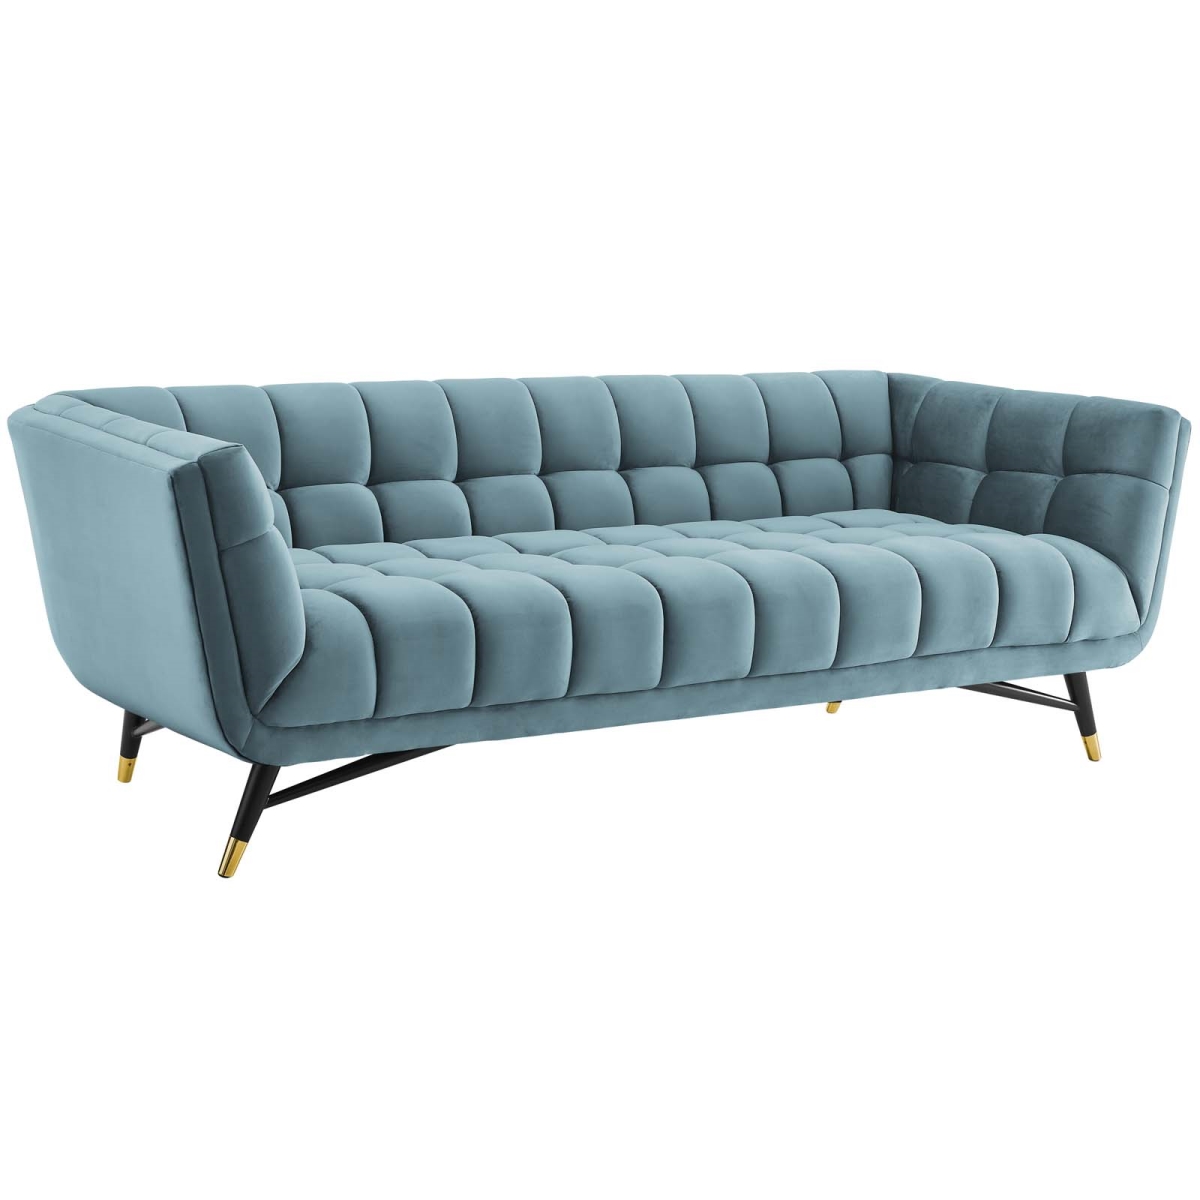 Eei-3059-sea Adept Upholstered Velvet Sofa - Sea Blue, 28.5 X 36.5 X 90 In.